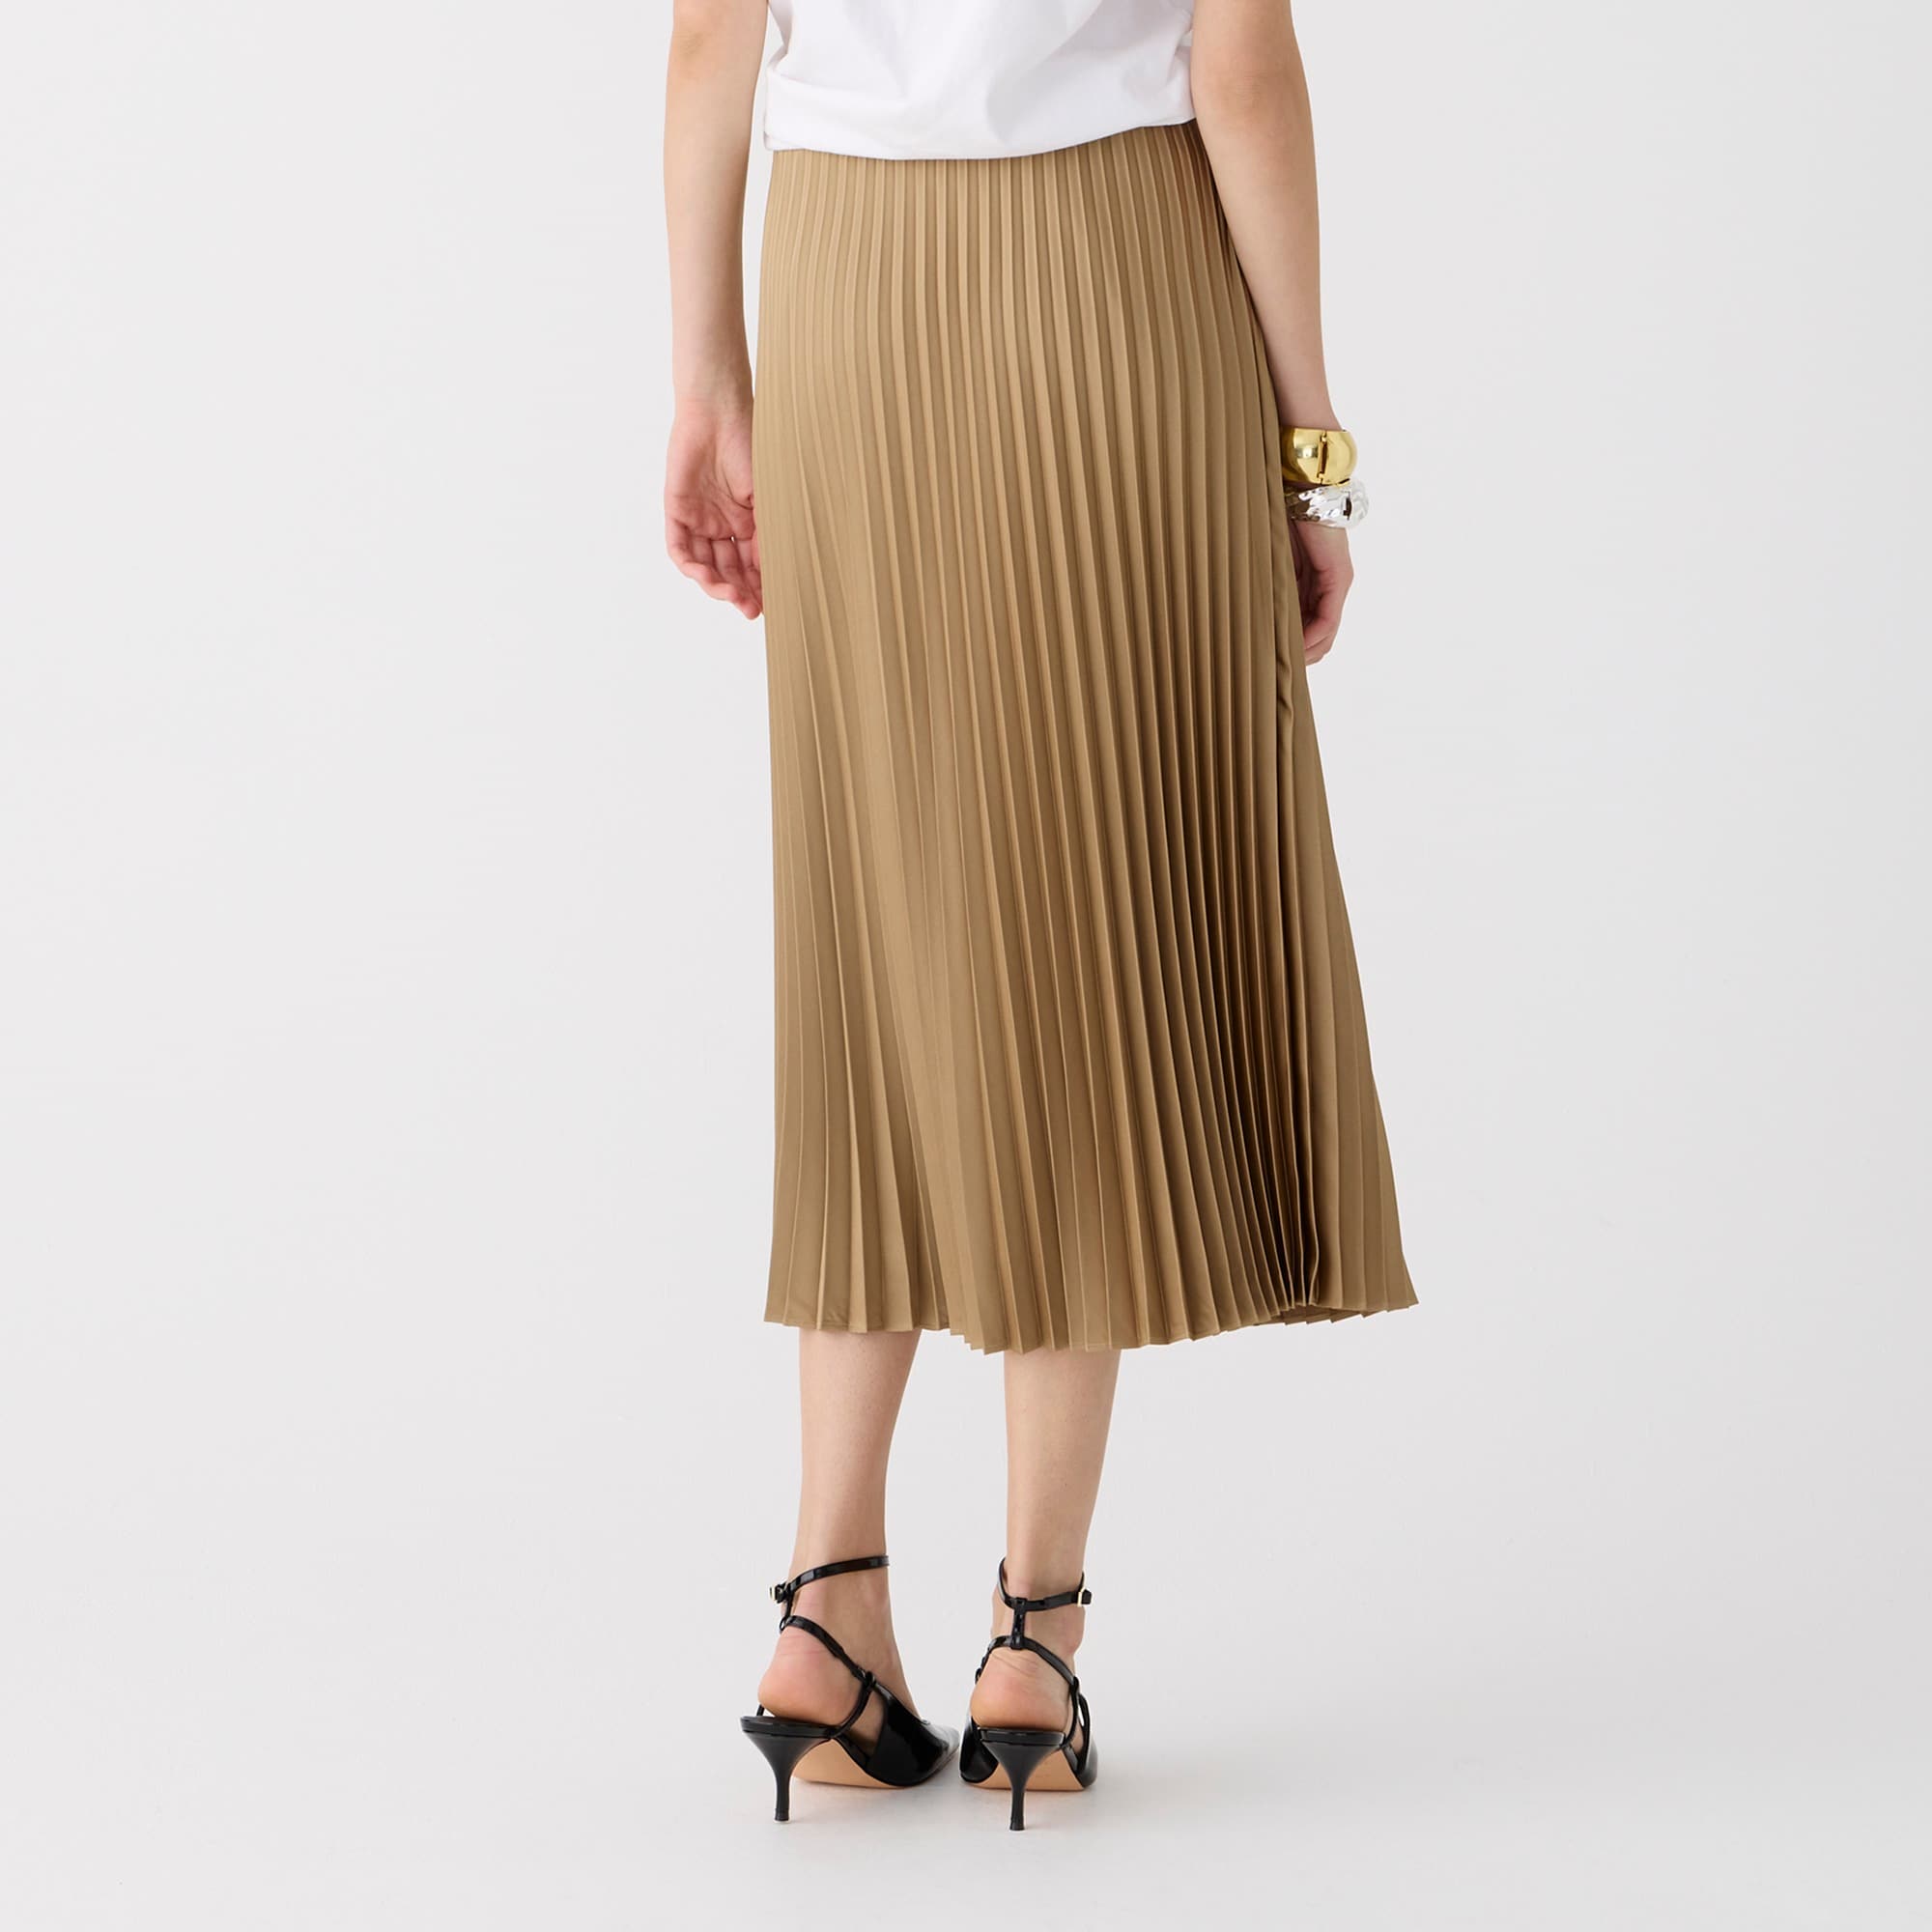 Entertainment Value Brown Velvet Pleated Skirt